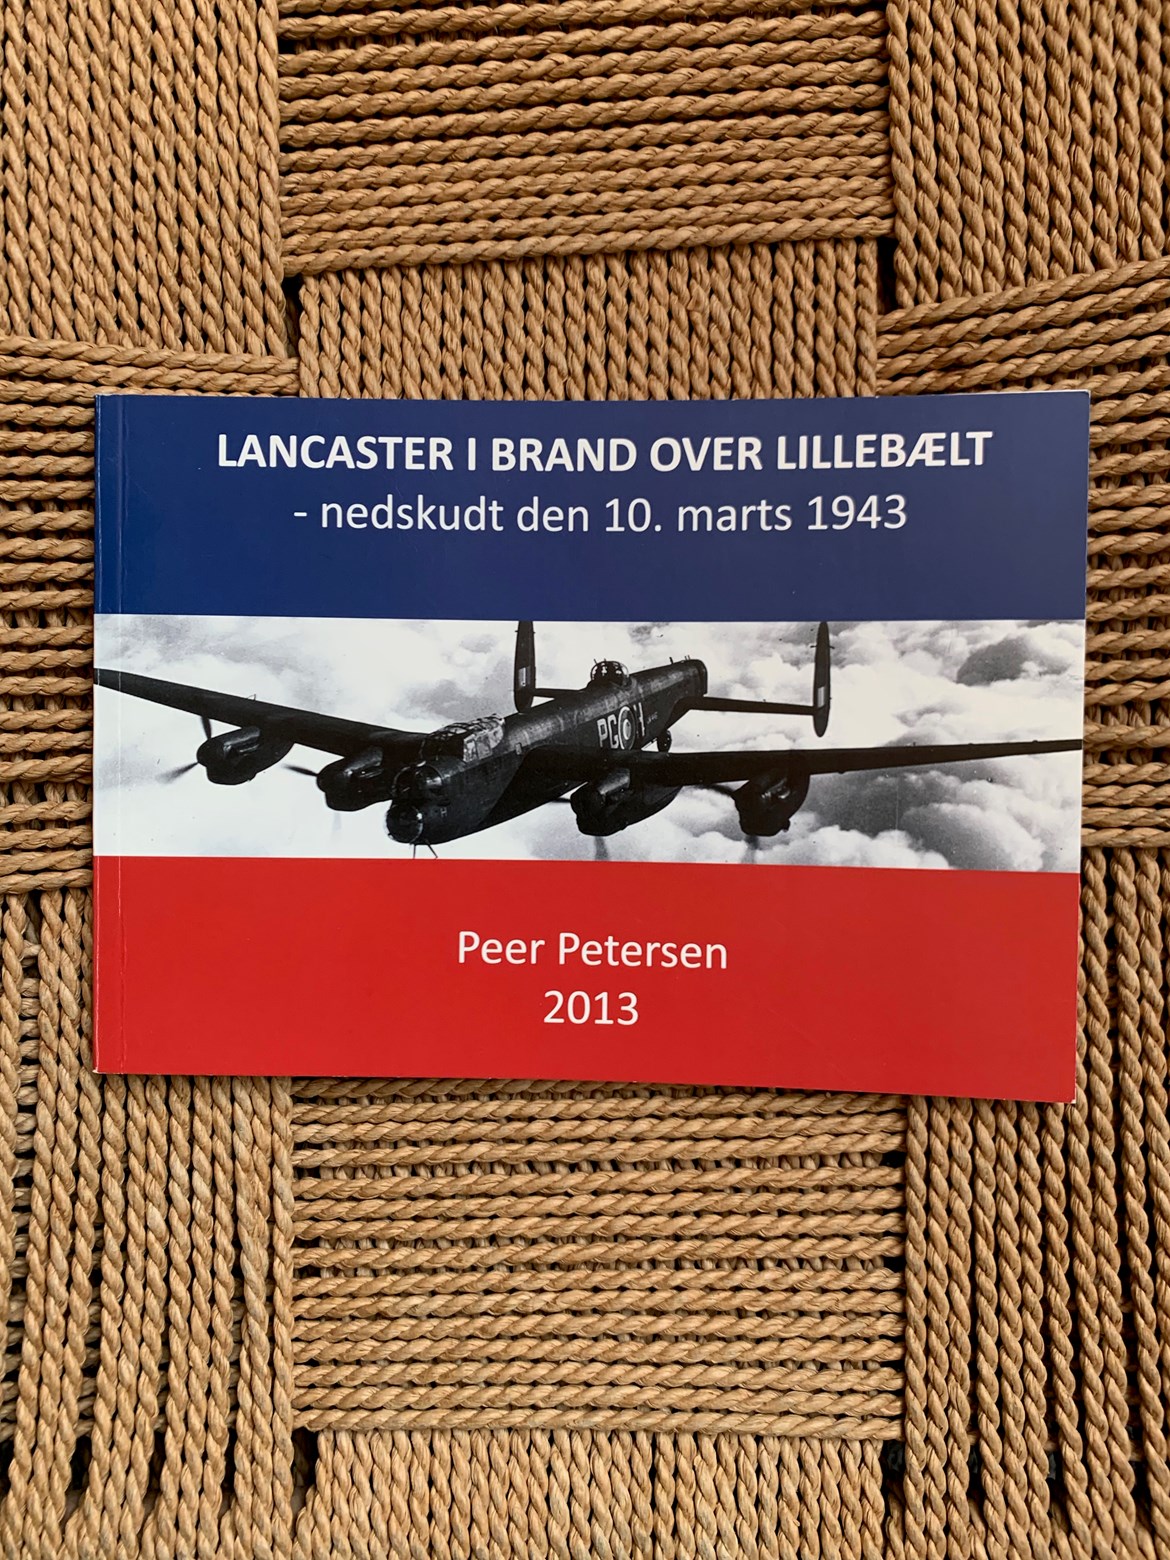 Lancaster i brand over Lillebælt - nedskudt den 10. marts 1943 af Peer Petersen.